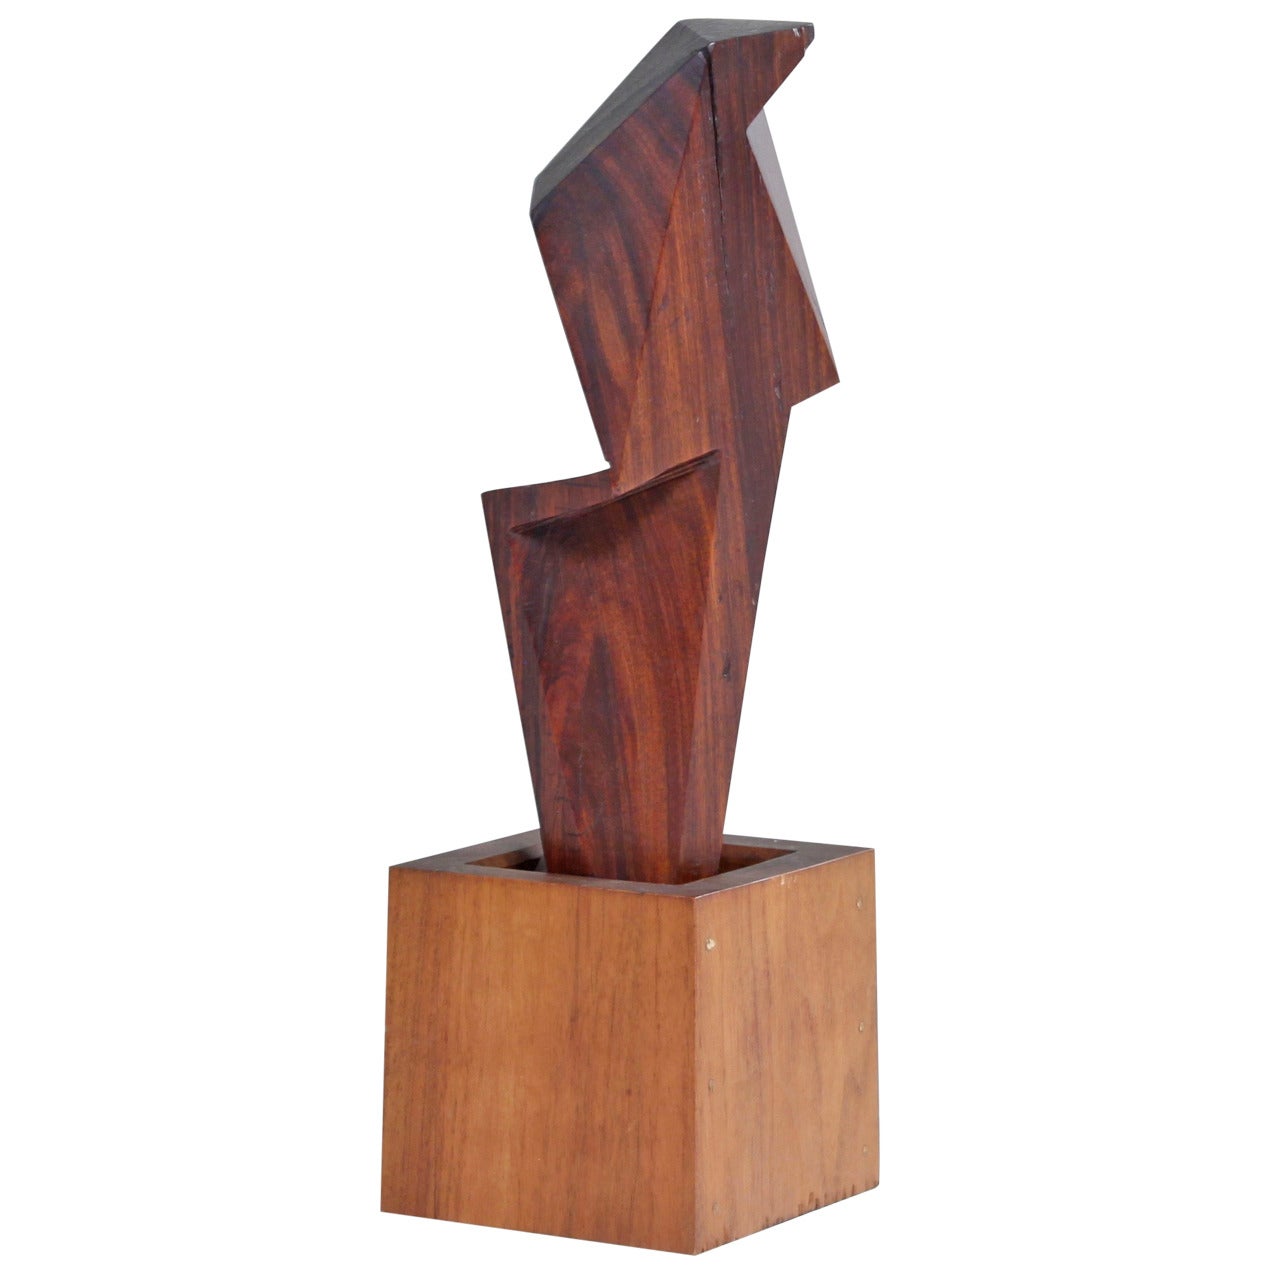 David E. Rogers Cubist Sculpture For Sale